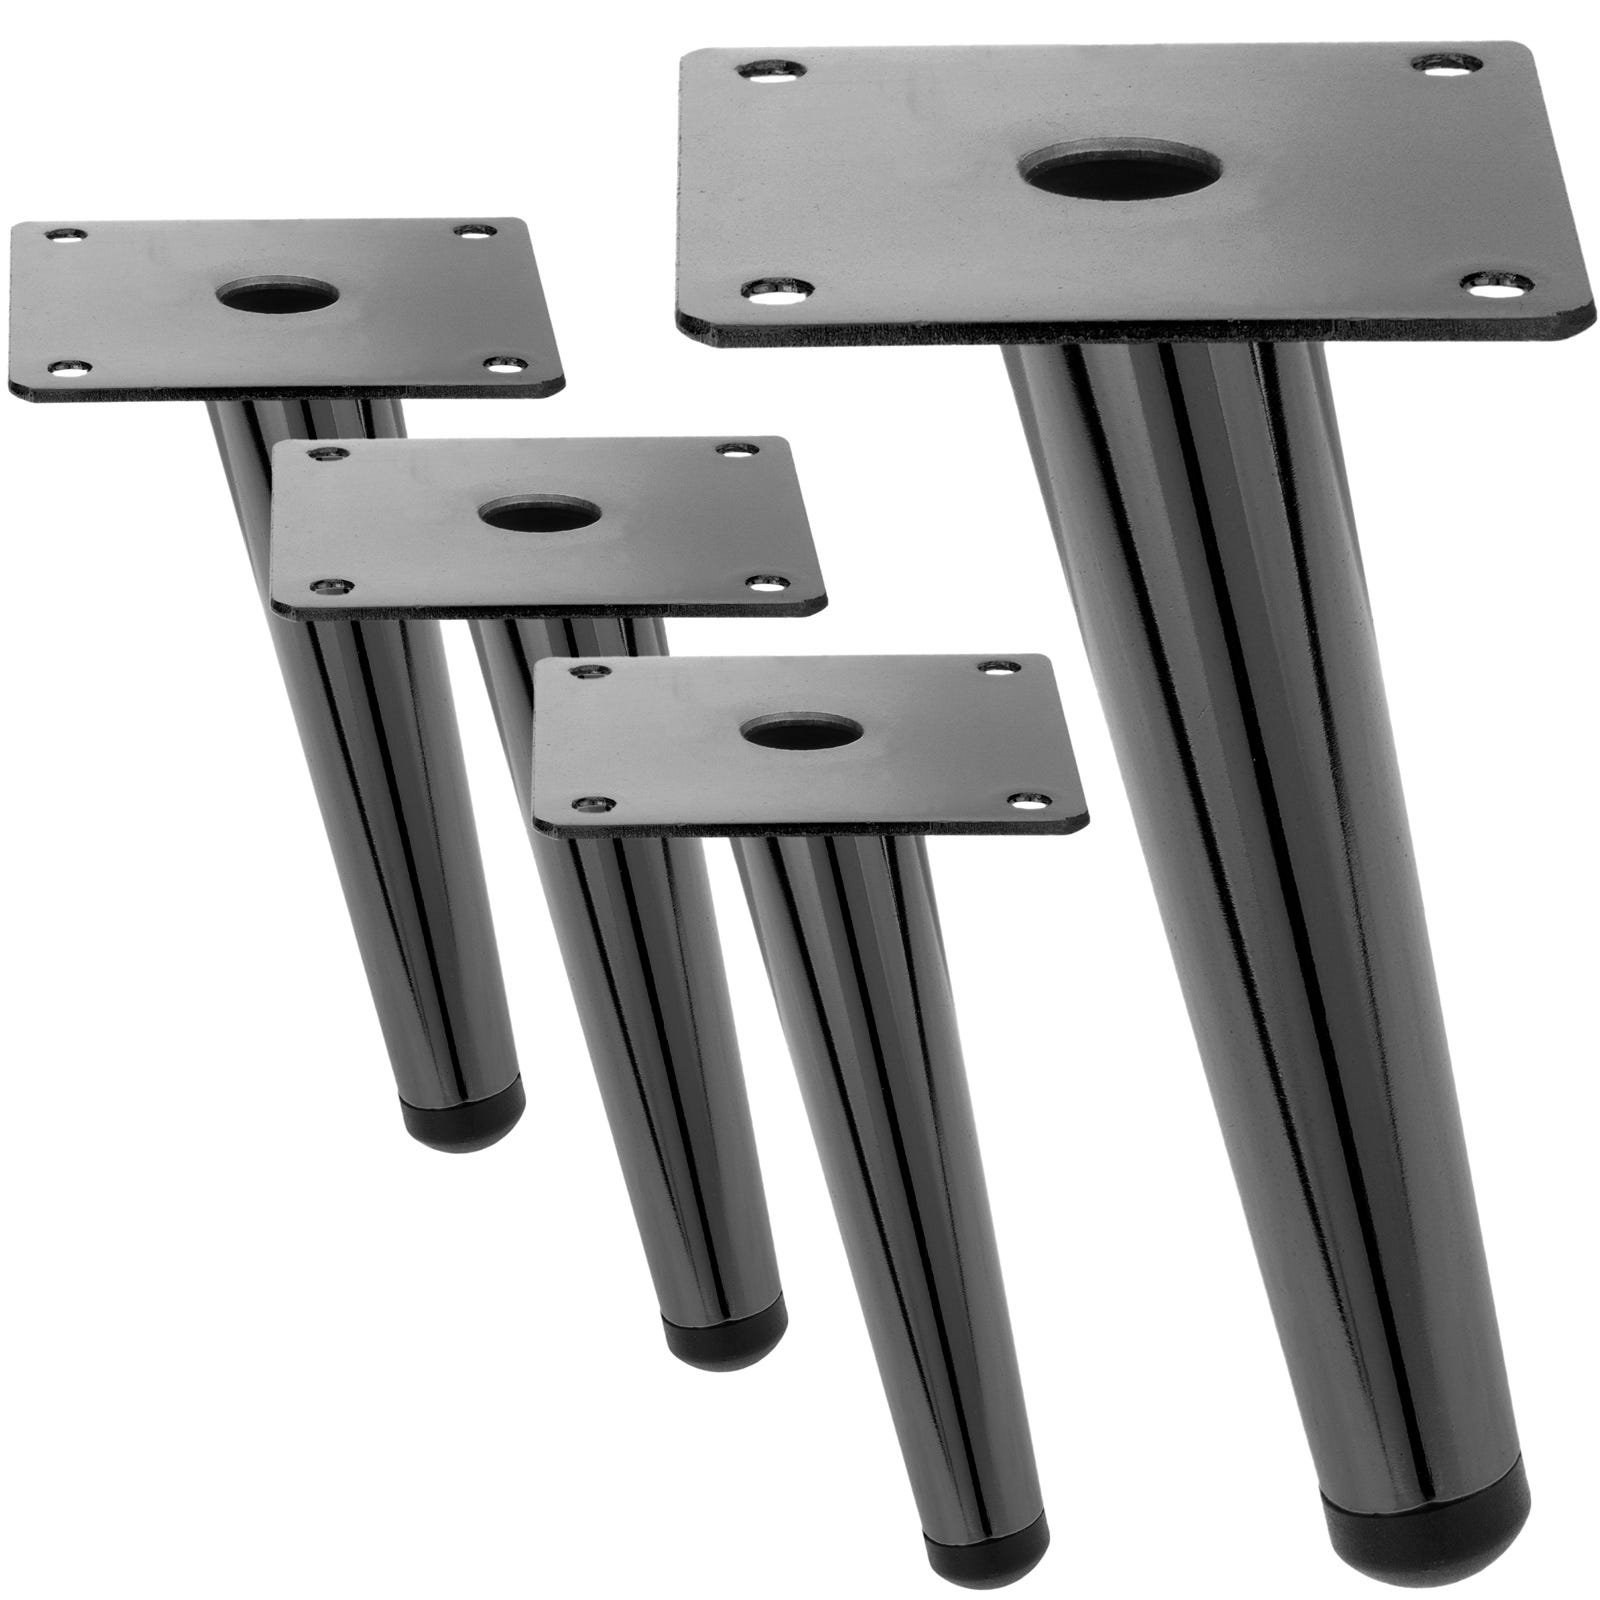 Pack de 4 patas rectas para muebles con forma cónica y protección  antideslizante de 20cm color negro - Cablematic